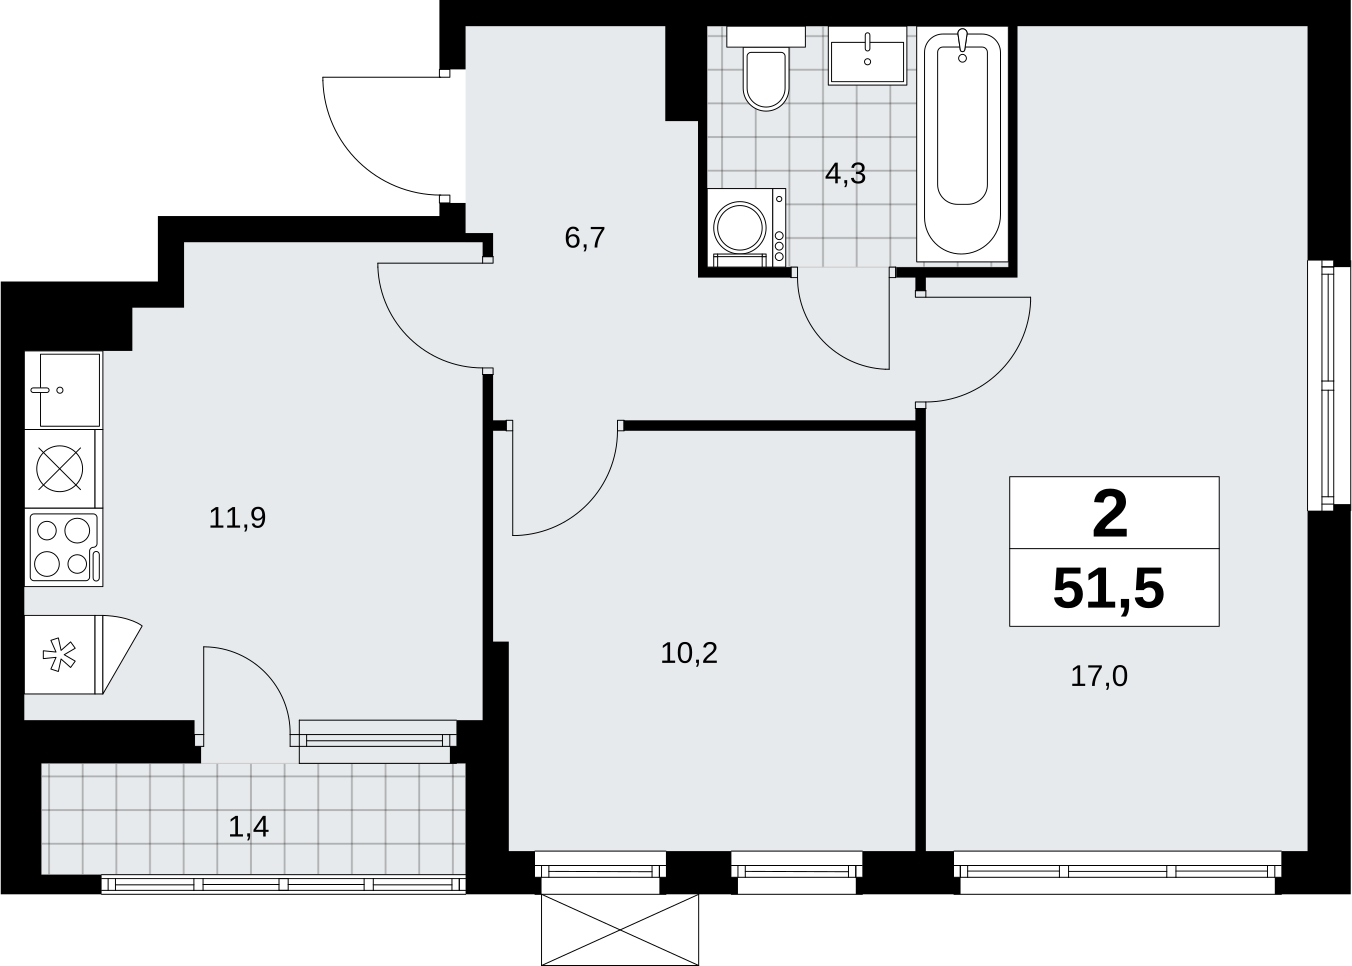 Продается просторная 2-комнатная квартира в новом ЖК, недалеко от метро